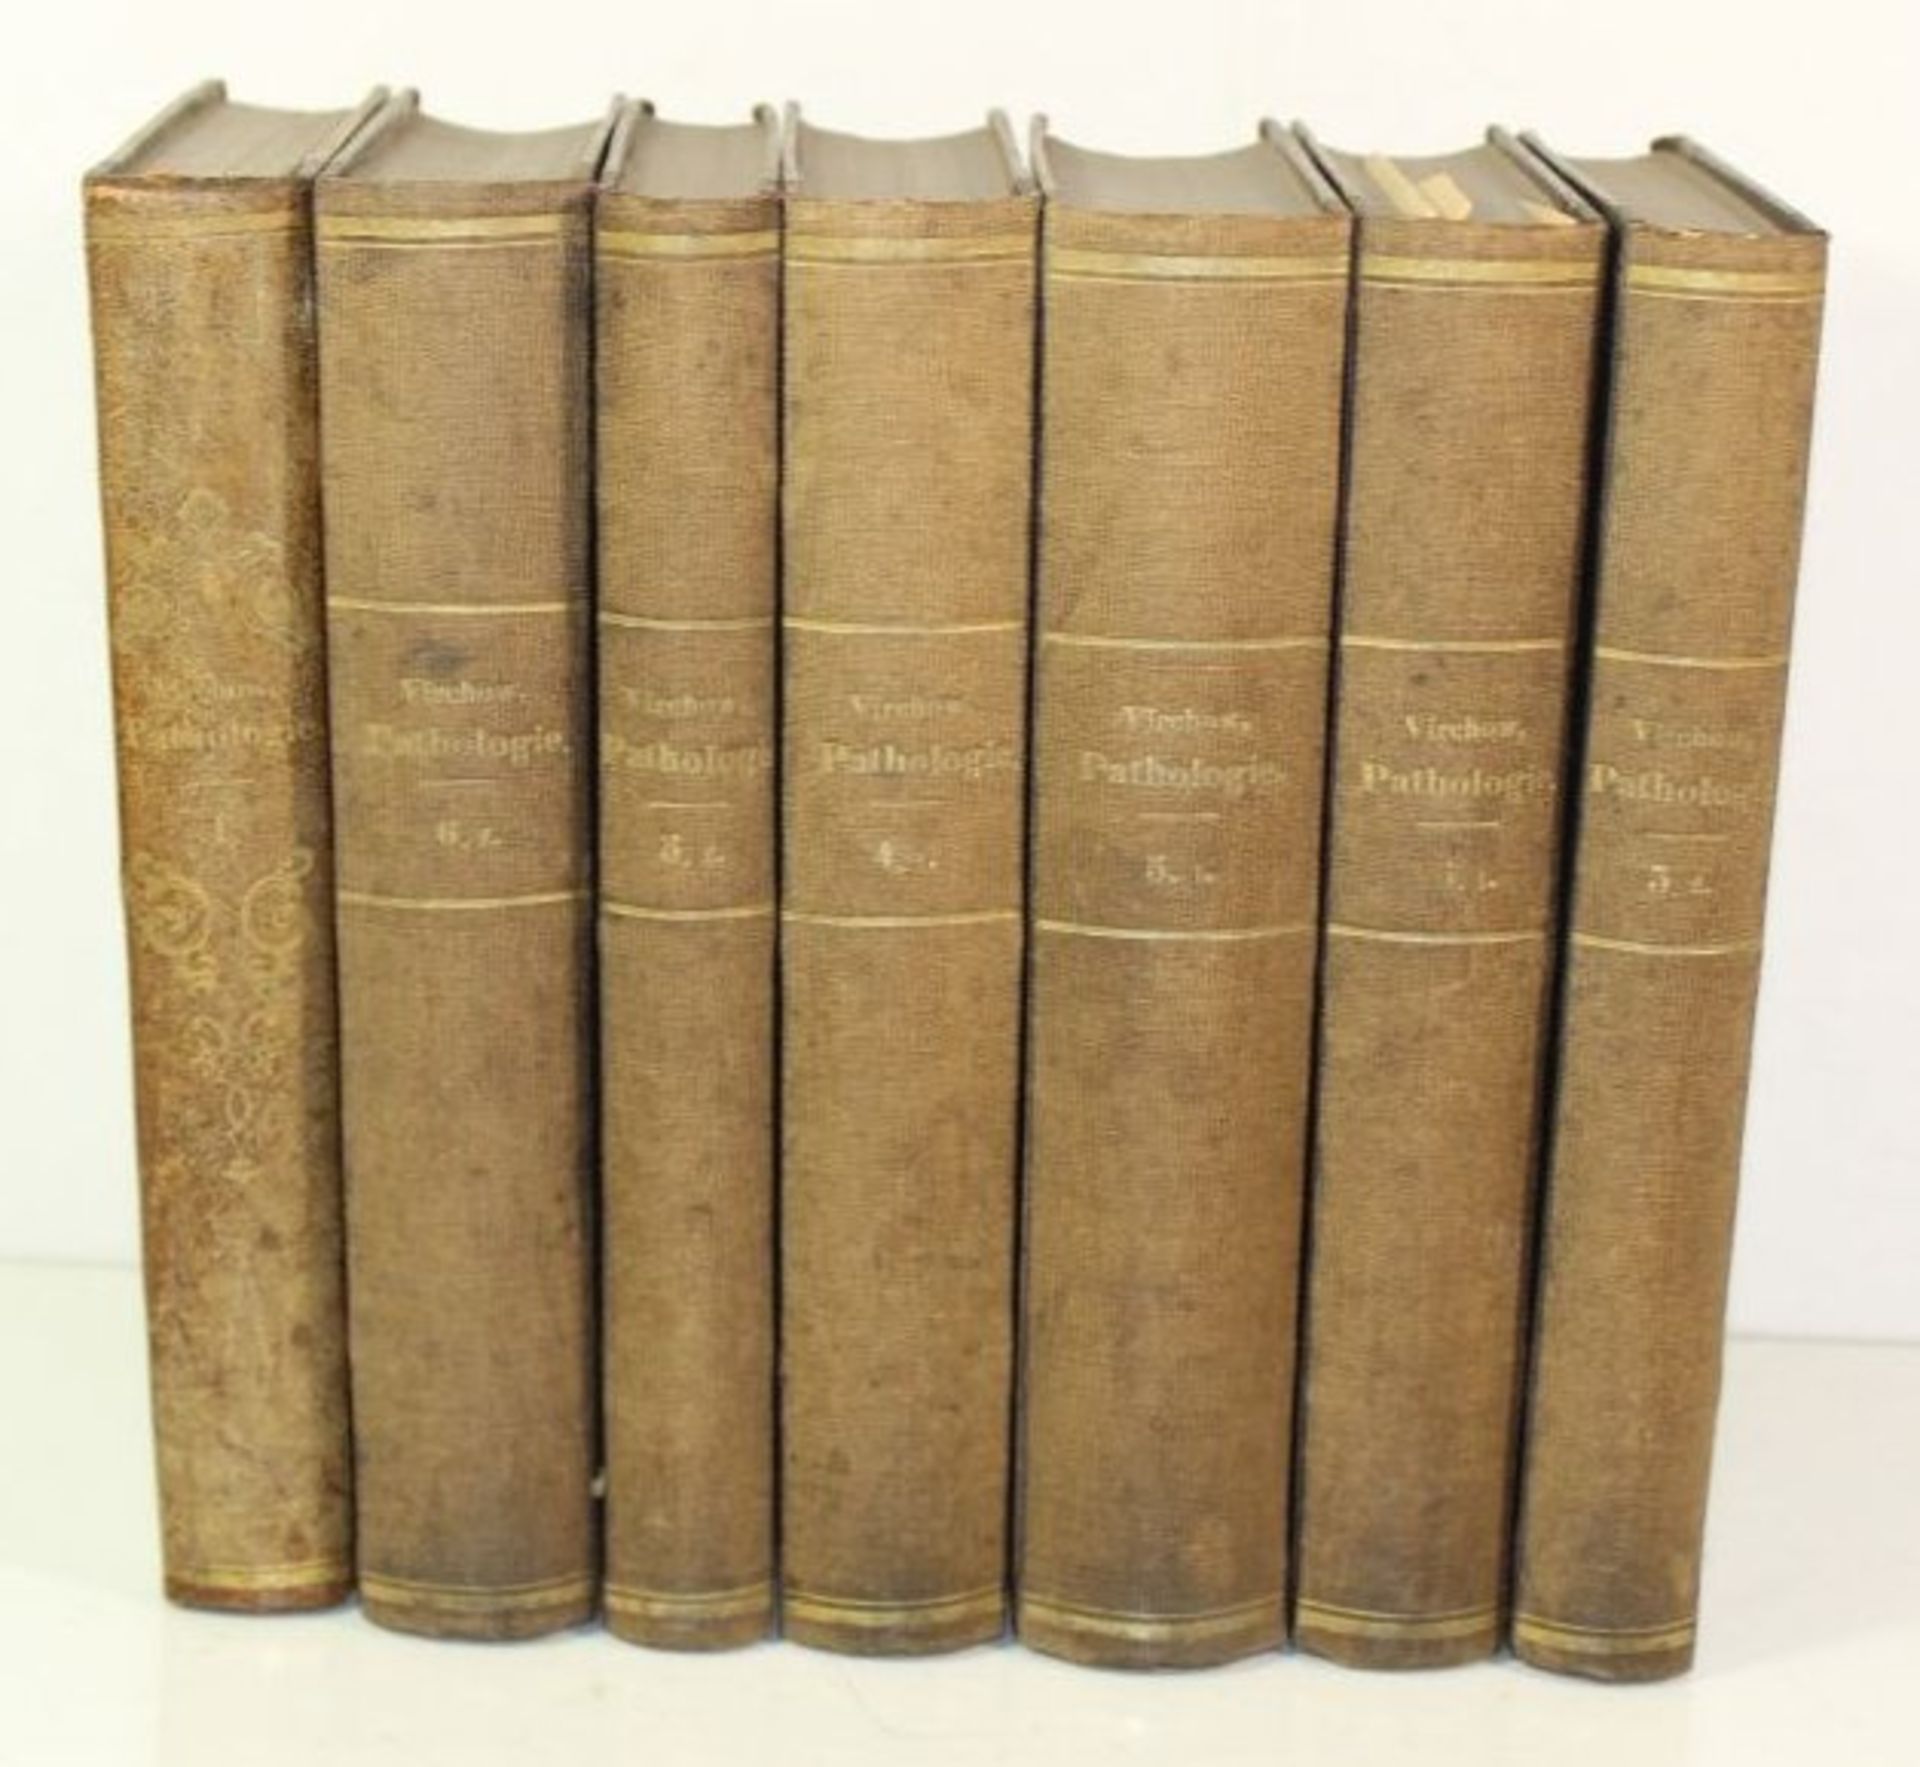 Rud. Virchow, Pathologie und Therapie, 7 Bände, 1854-1865.- - -22.61 % buyer's premium on the hammer